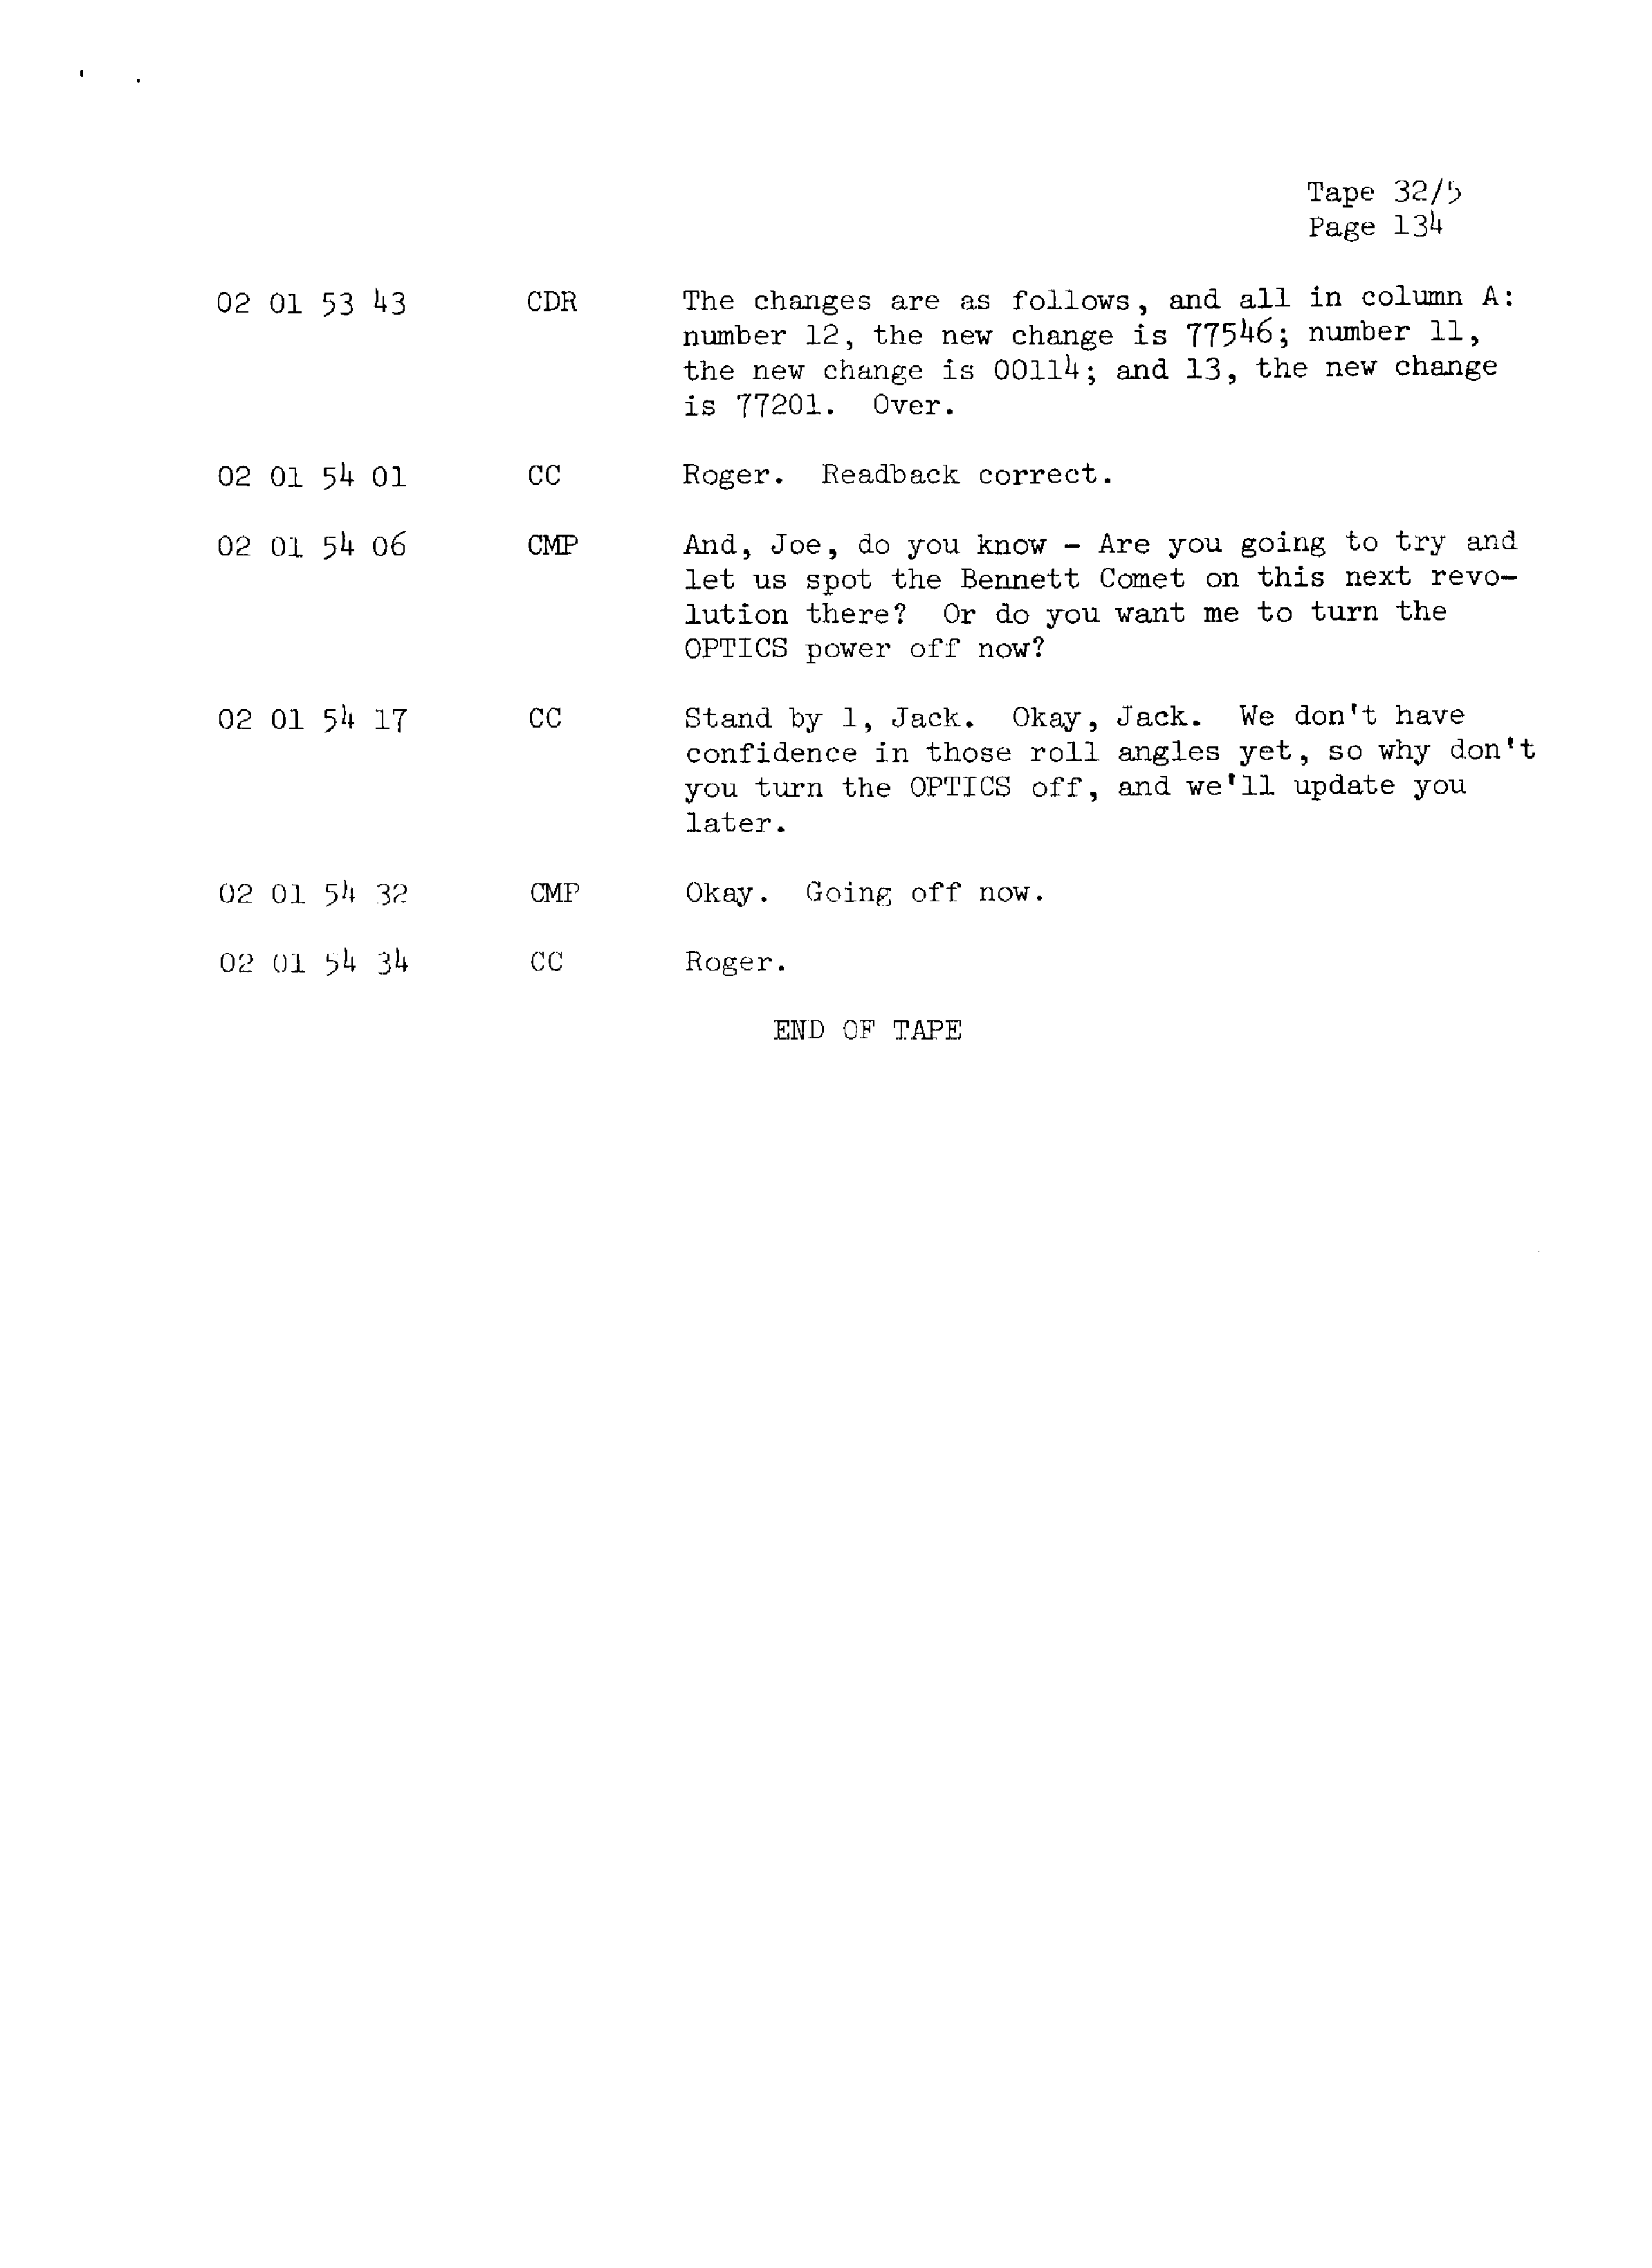 Page 141 of Apollo 13’s original transcript